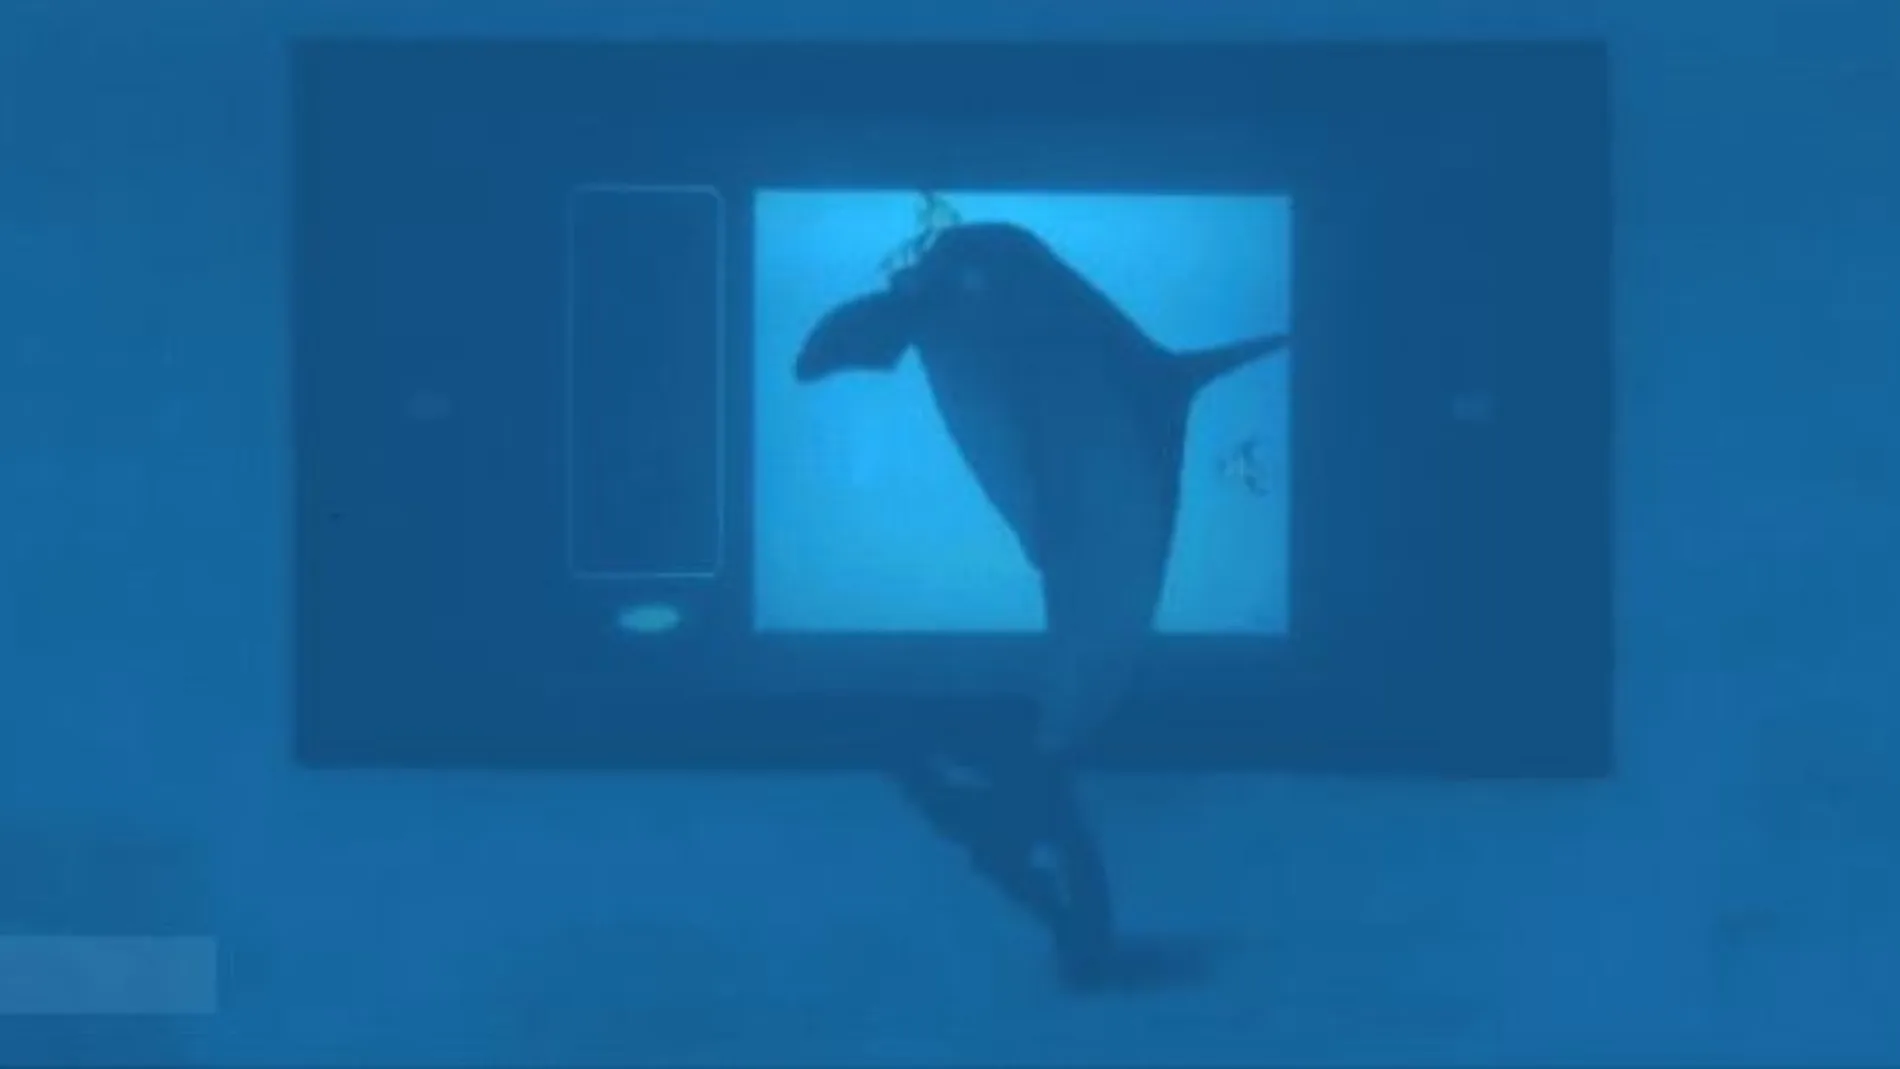 Uno de los delfines reaccionando ante la pantalla